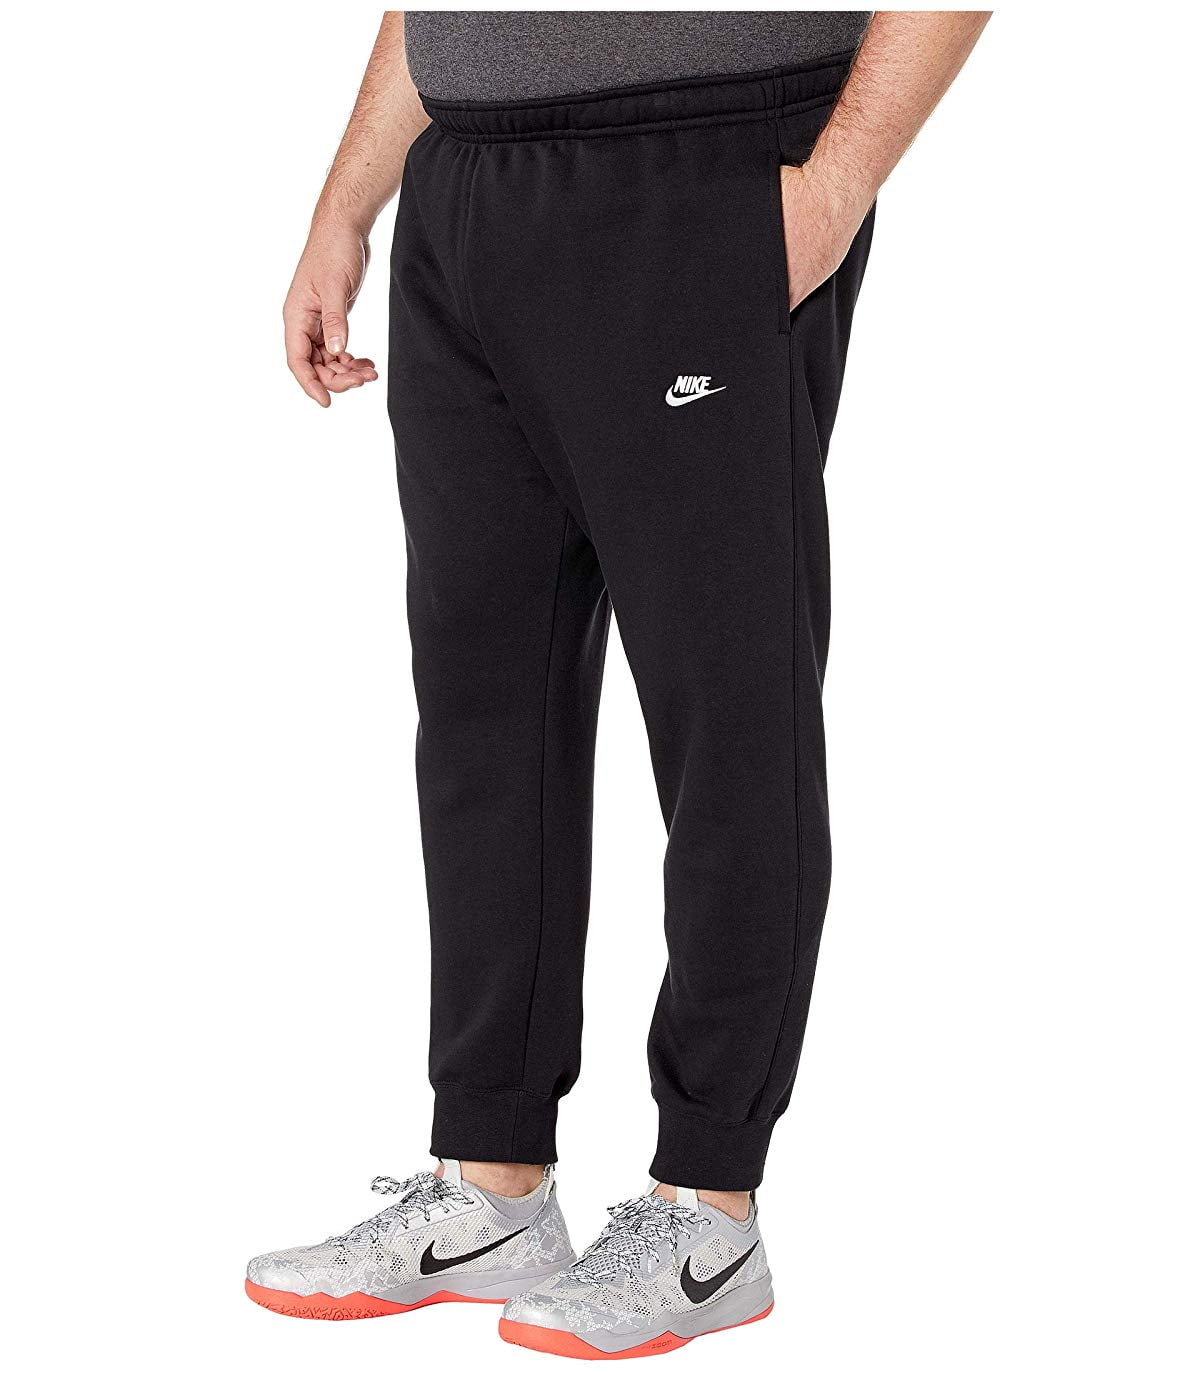 Nike - Nike Men's Sportswear Club Fleece Joggers - Walmart.com ...